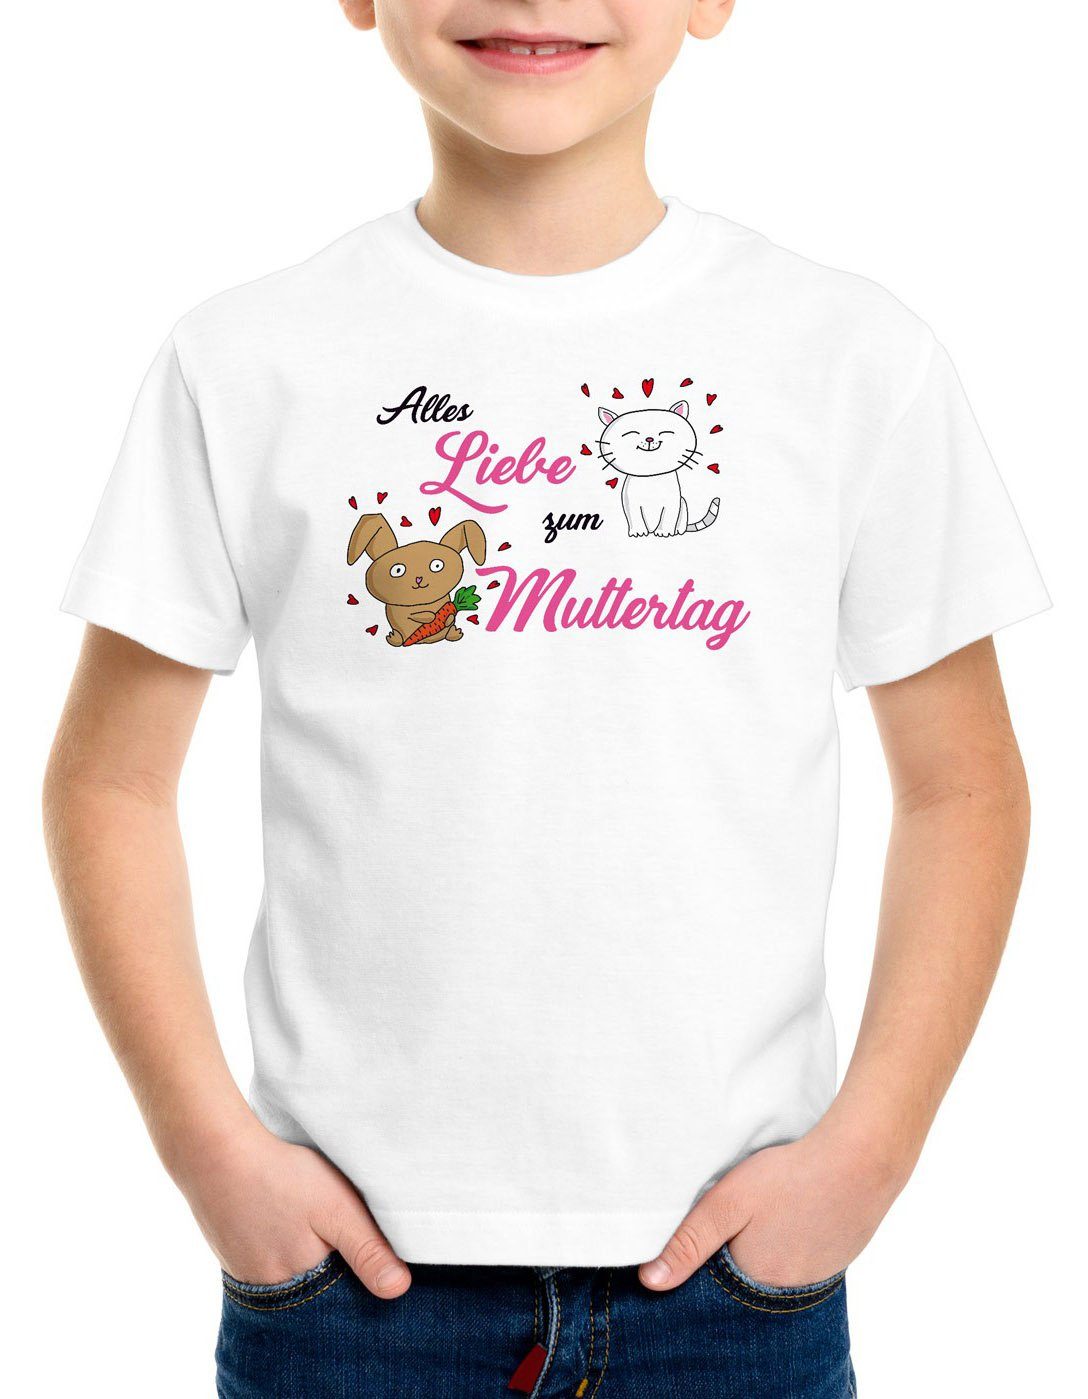 Geschenk Mum Liebe Mama Kinder Alles i love T-Shirt weiß Katze Muttertag Print-Shirt zum Mutter style3